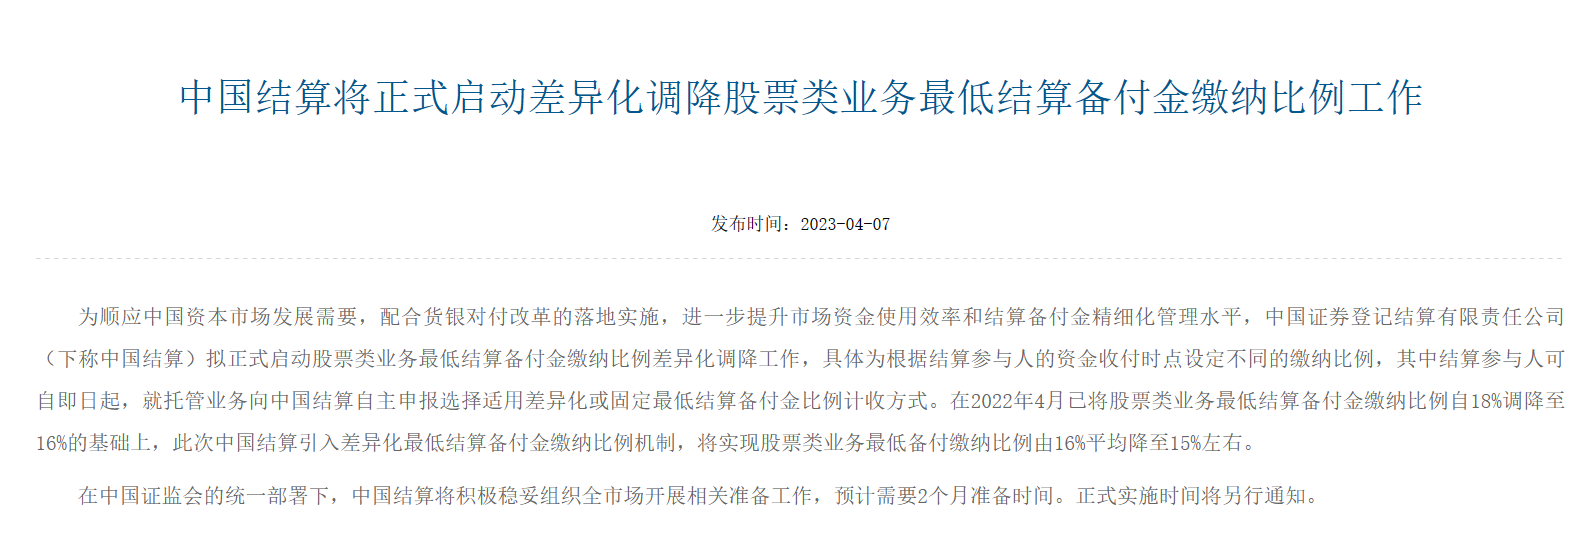 图为中国结算官网发布本次调降公告